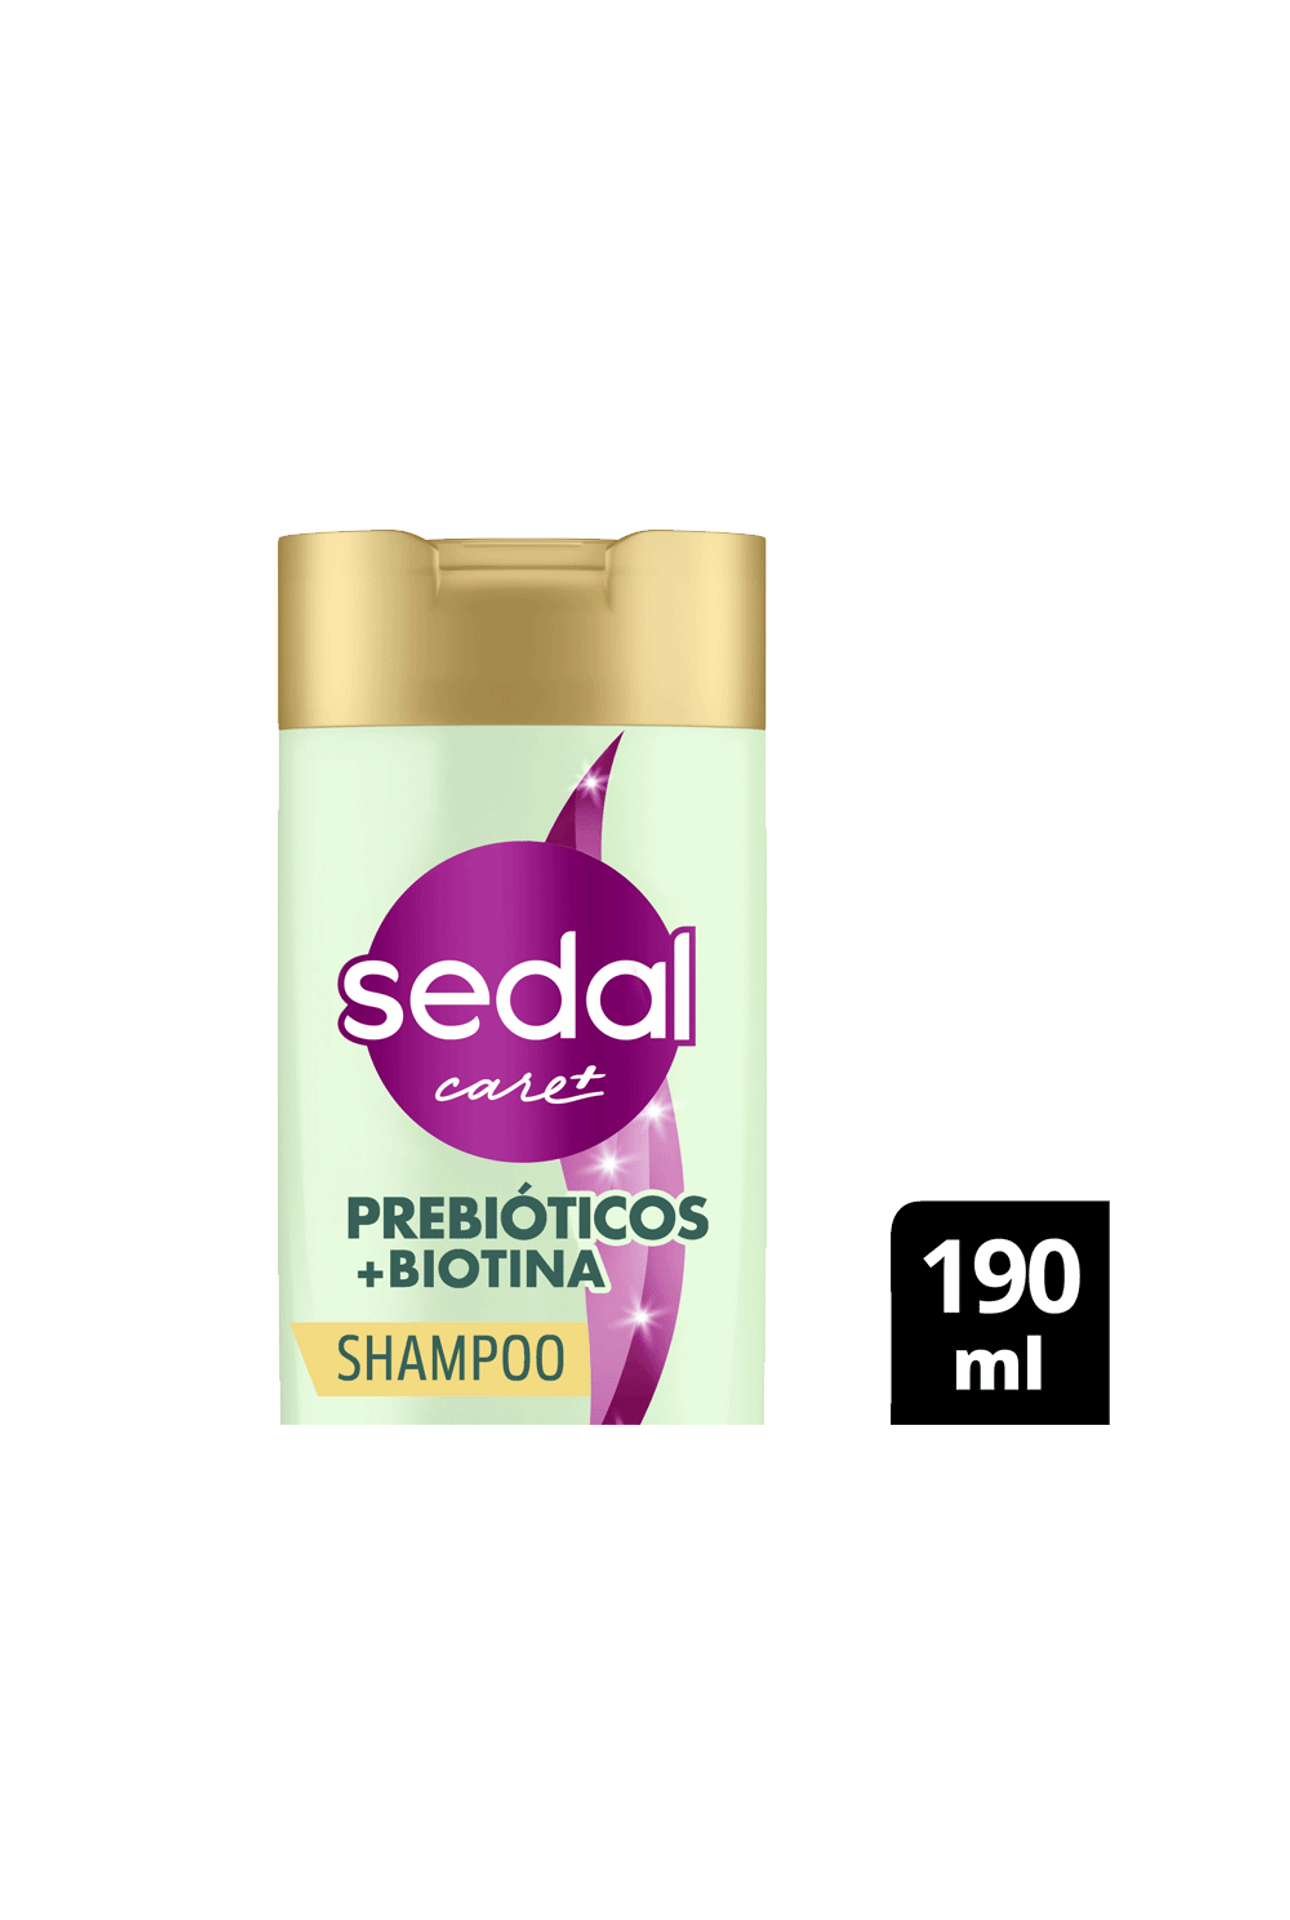 Sedal-Shampoo-Sedal-Prebioticos---Biotina-x-190-ml-7791293049724_img1